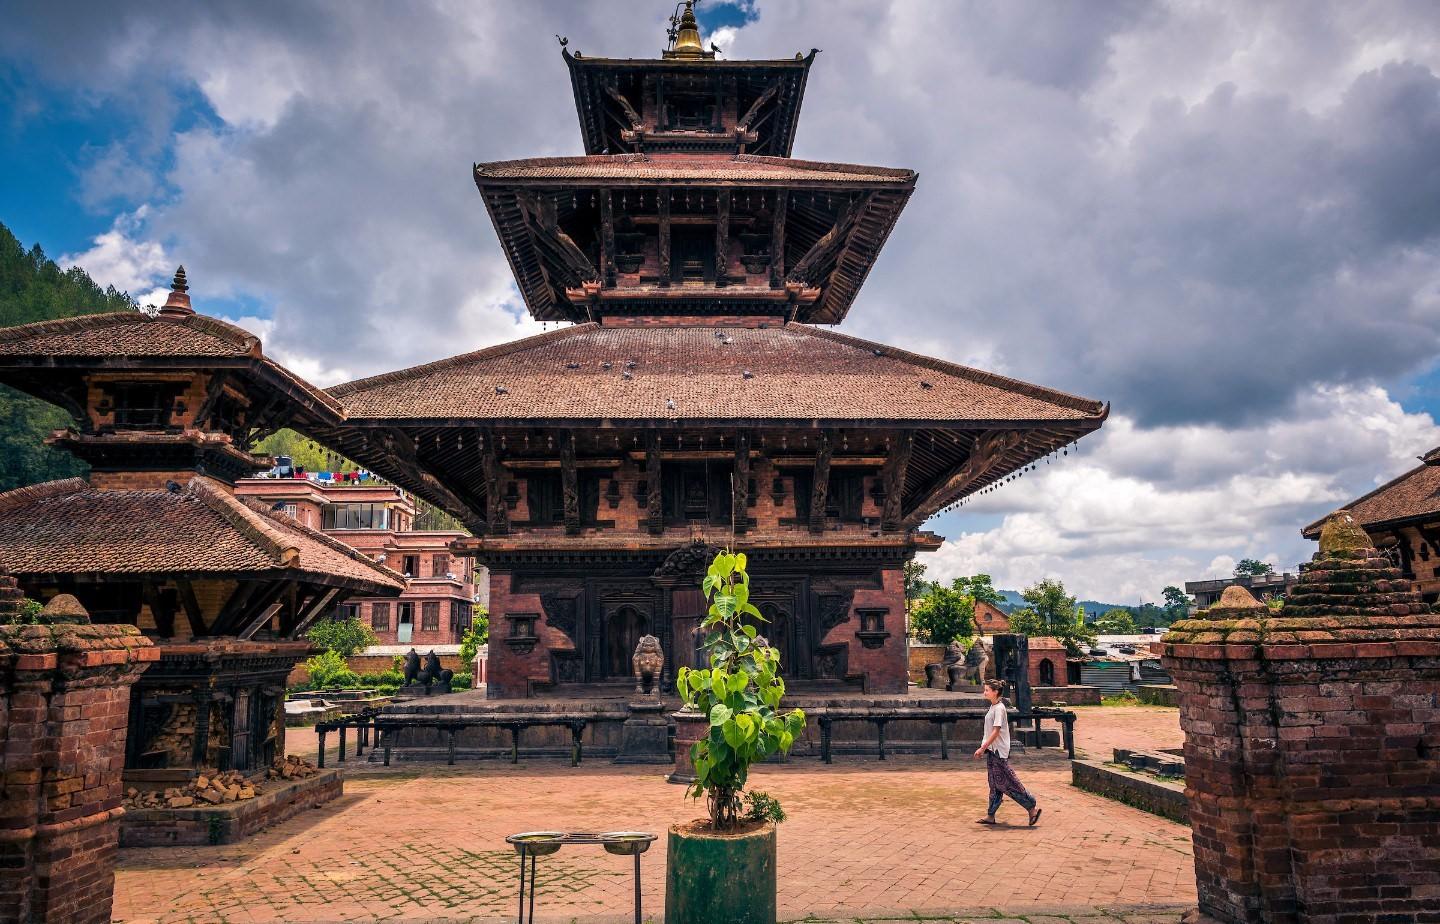 PANAUTI, Nepal